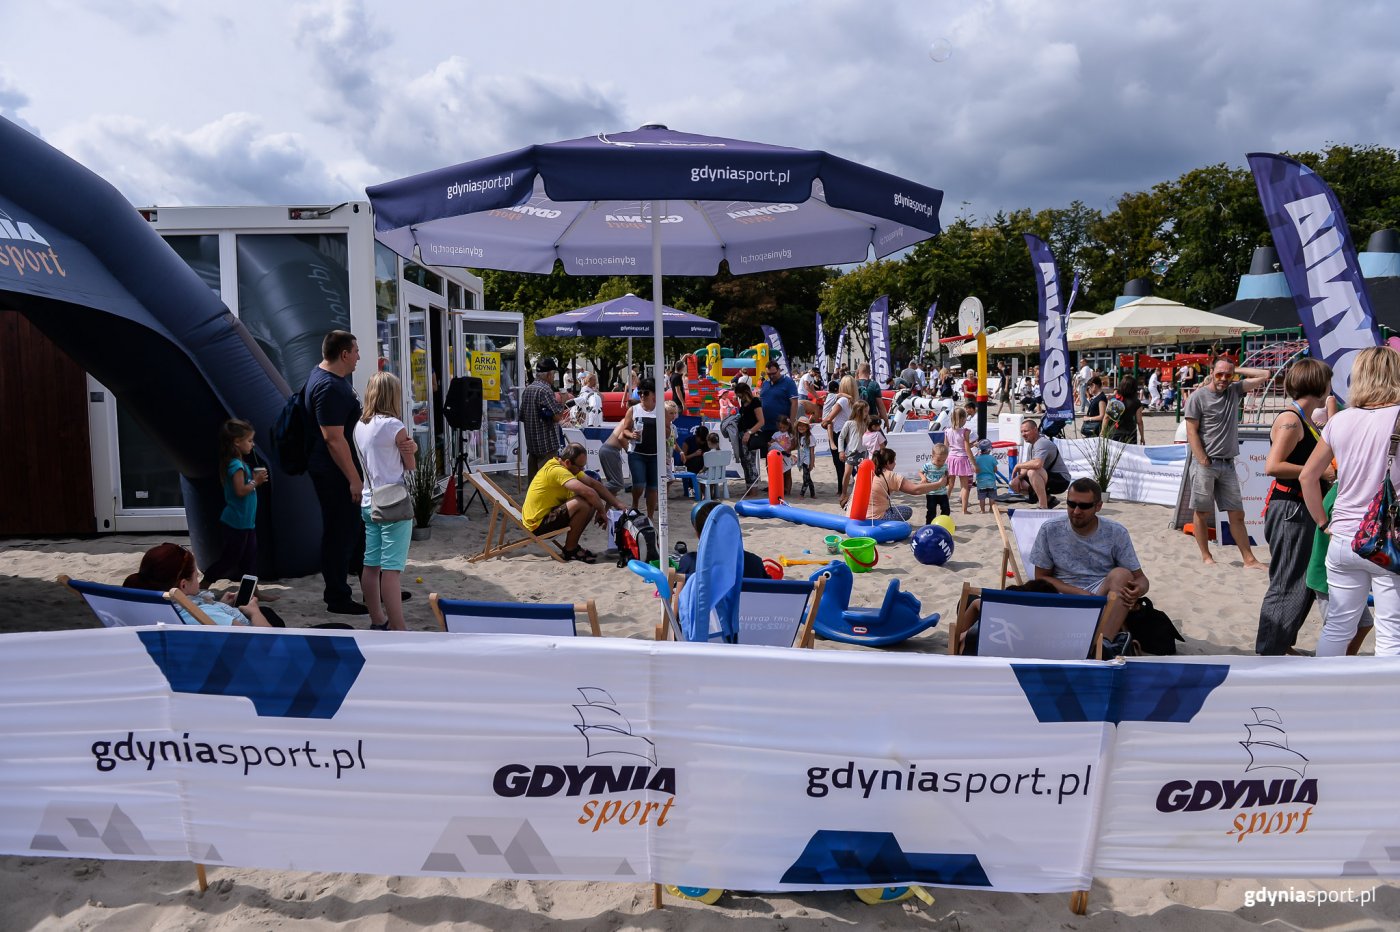 Festyn na pożegnanie wakacji zawsze przyciąga na plażę w Śródmieściu tłumy / fot. gdyniasport.pl